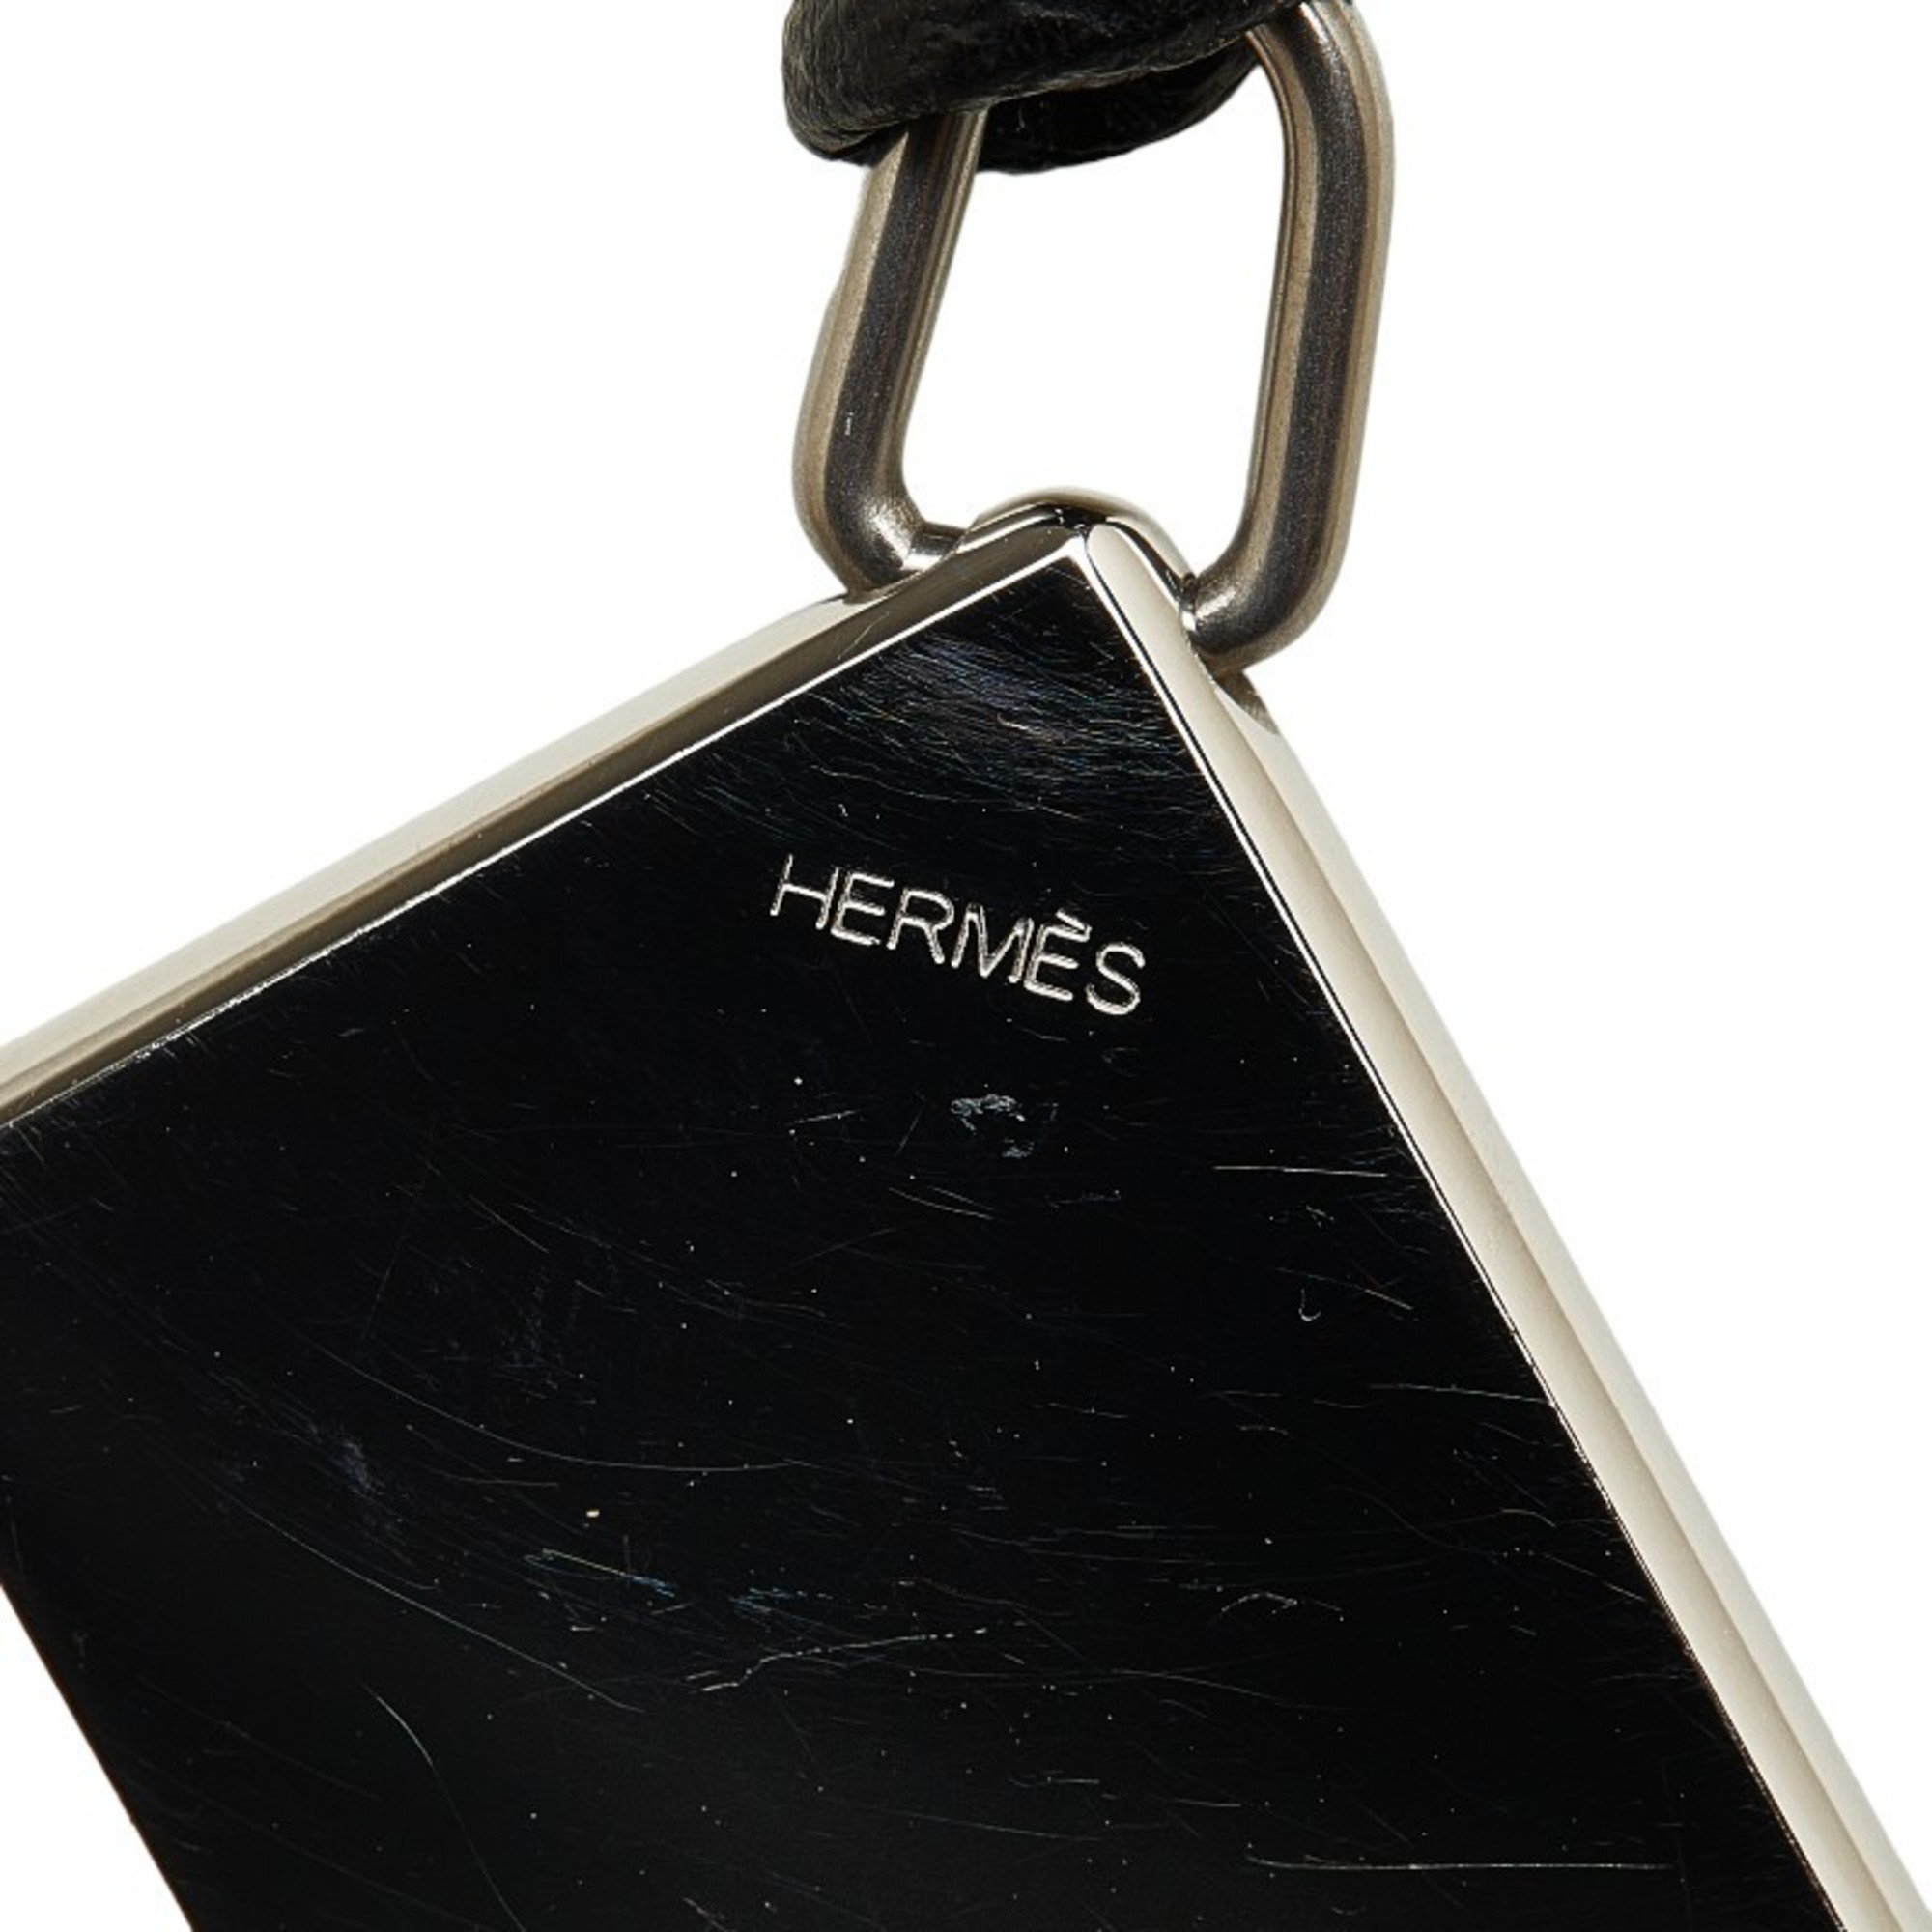 Hermes Dog Tag Necklace Silver Black Metal Women's HERMES